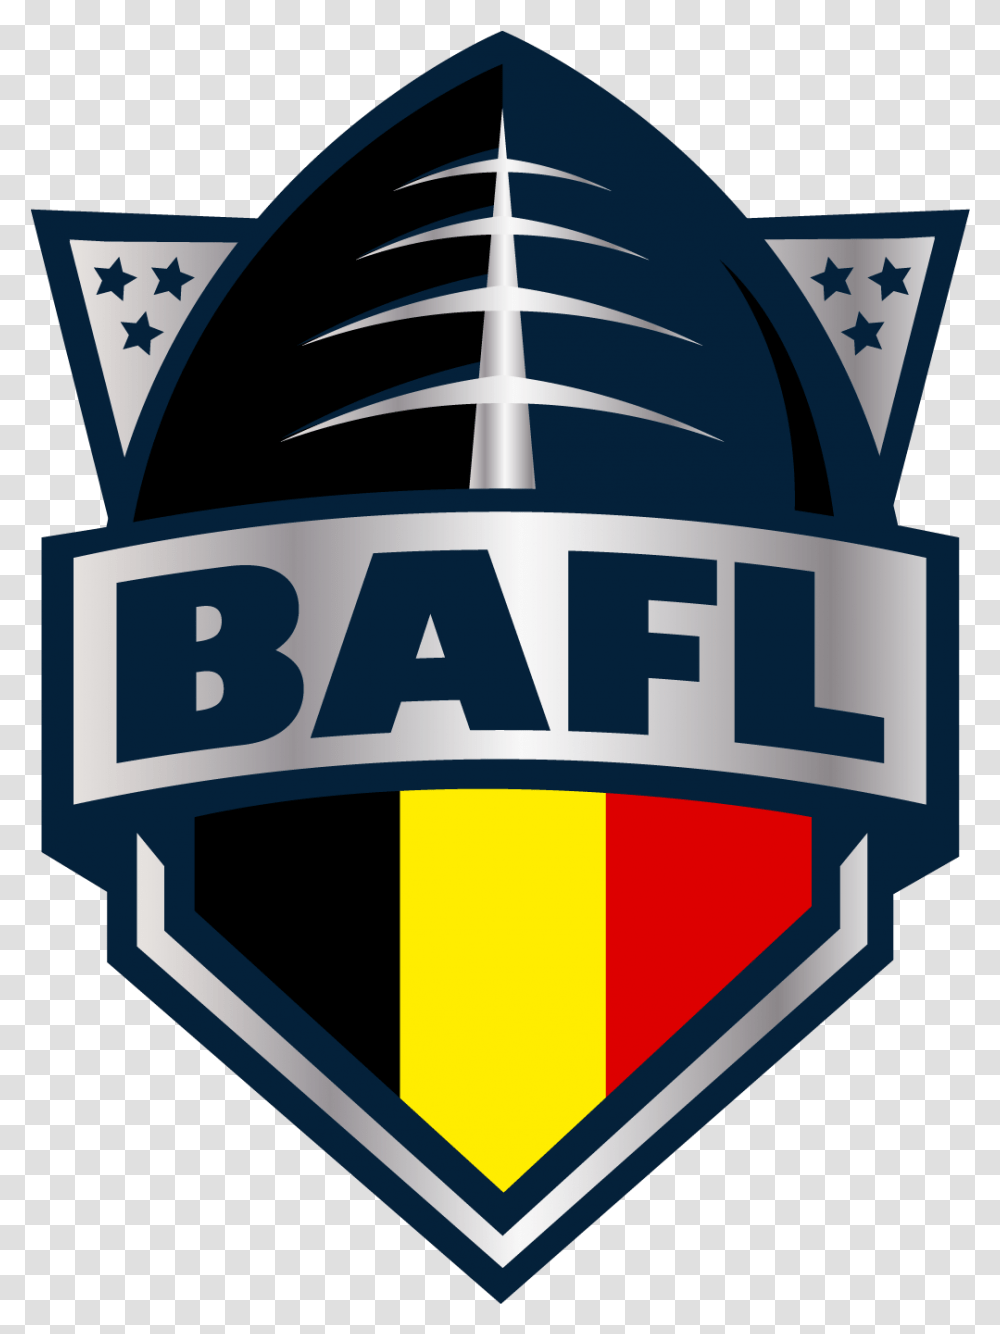 Bafl Belgium American Football League, Logo, Symbol, Label, Text Transparent Png